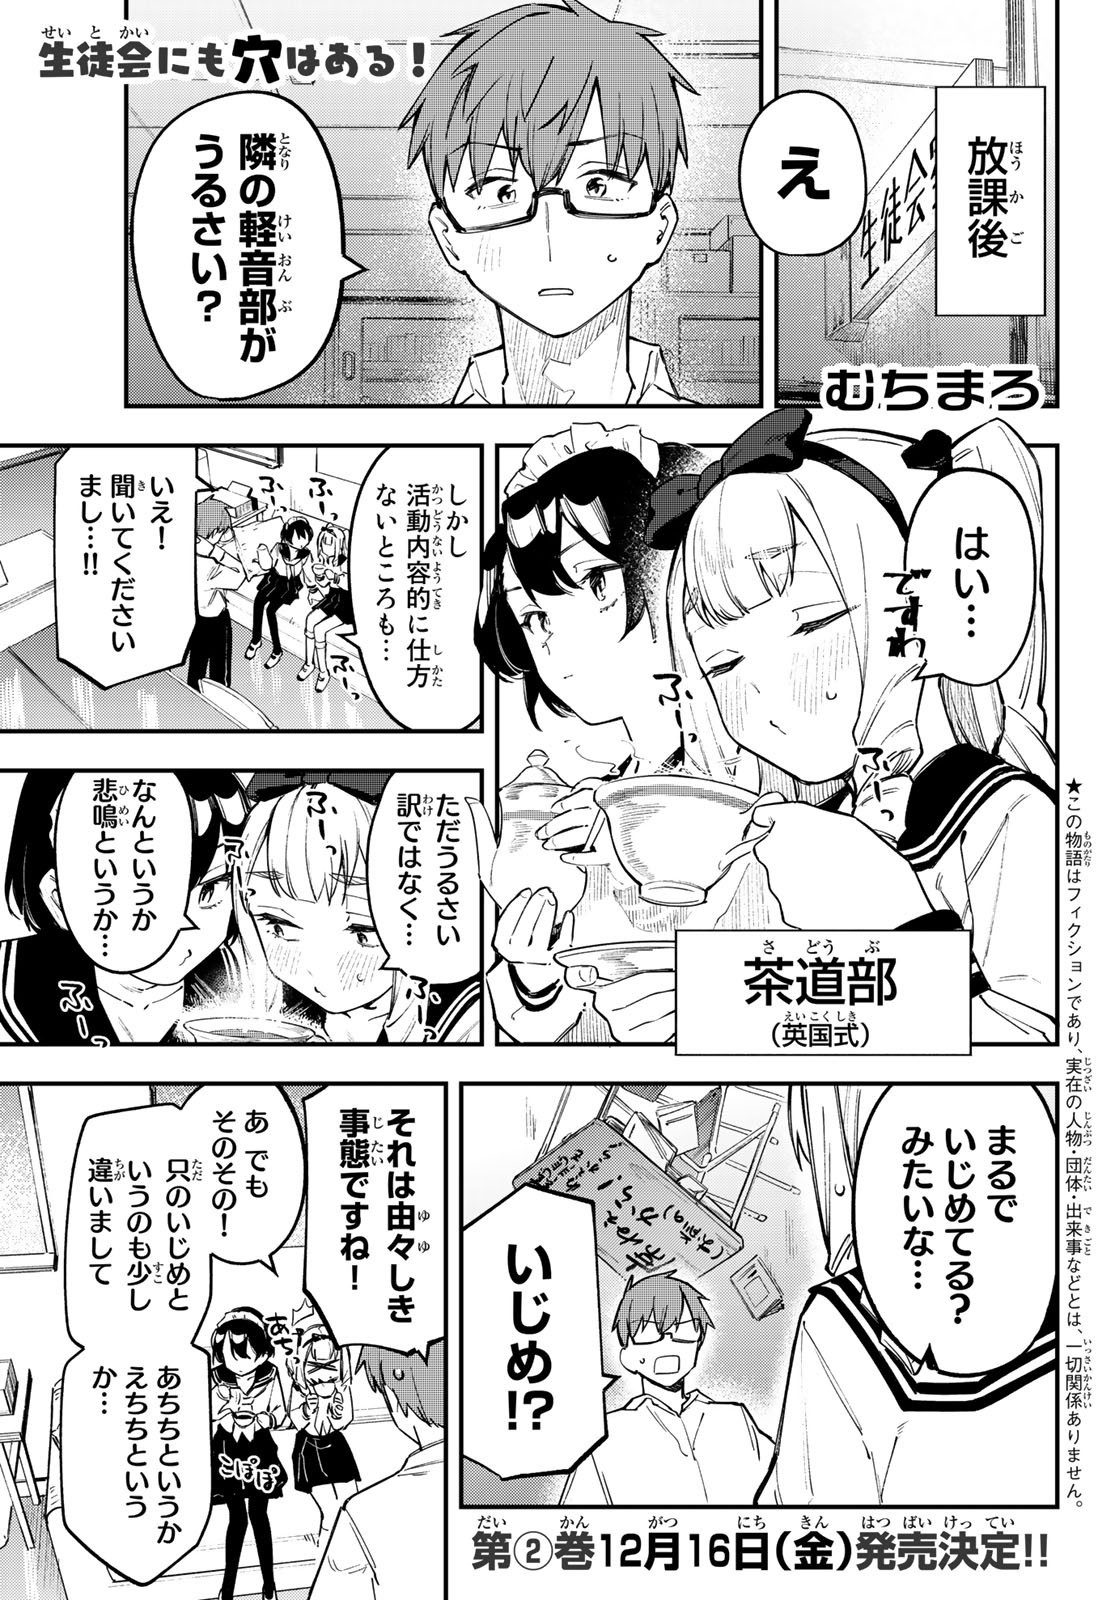 Seitokai ni mo Ana wa Aru! - Chapter 023 - Page 1